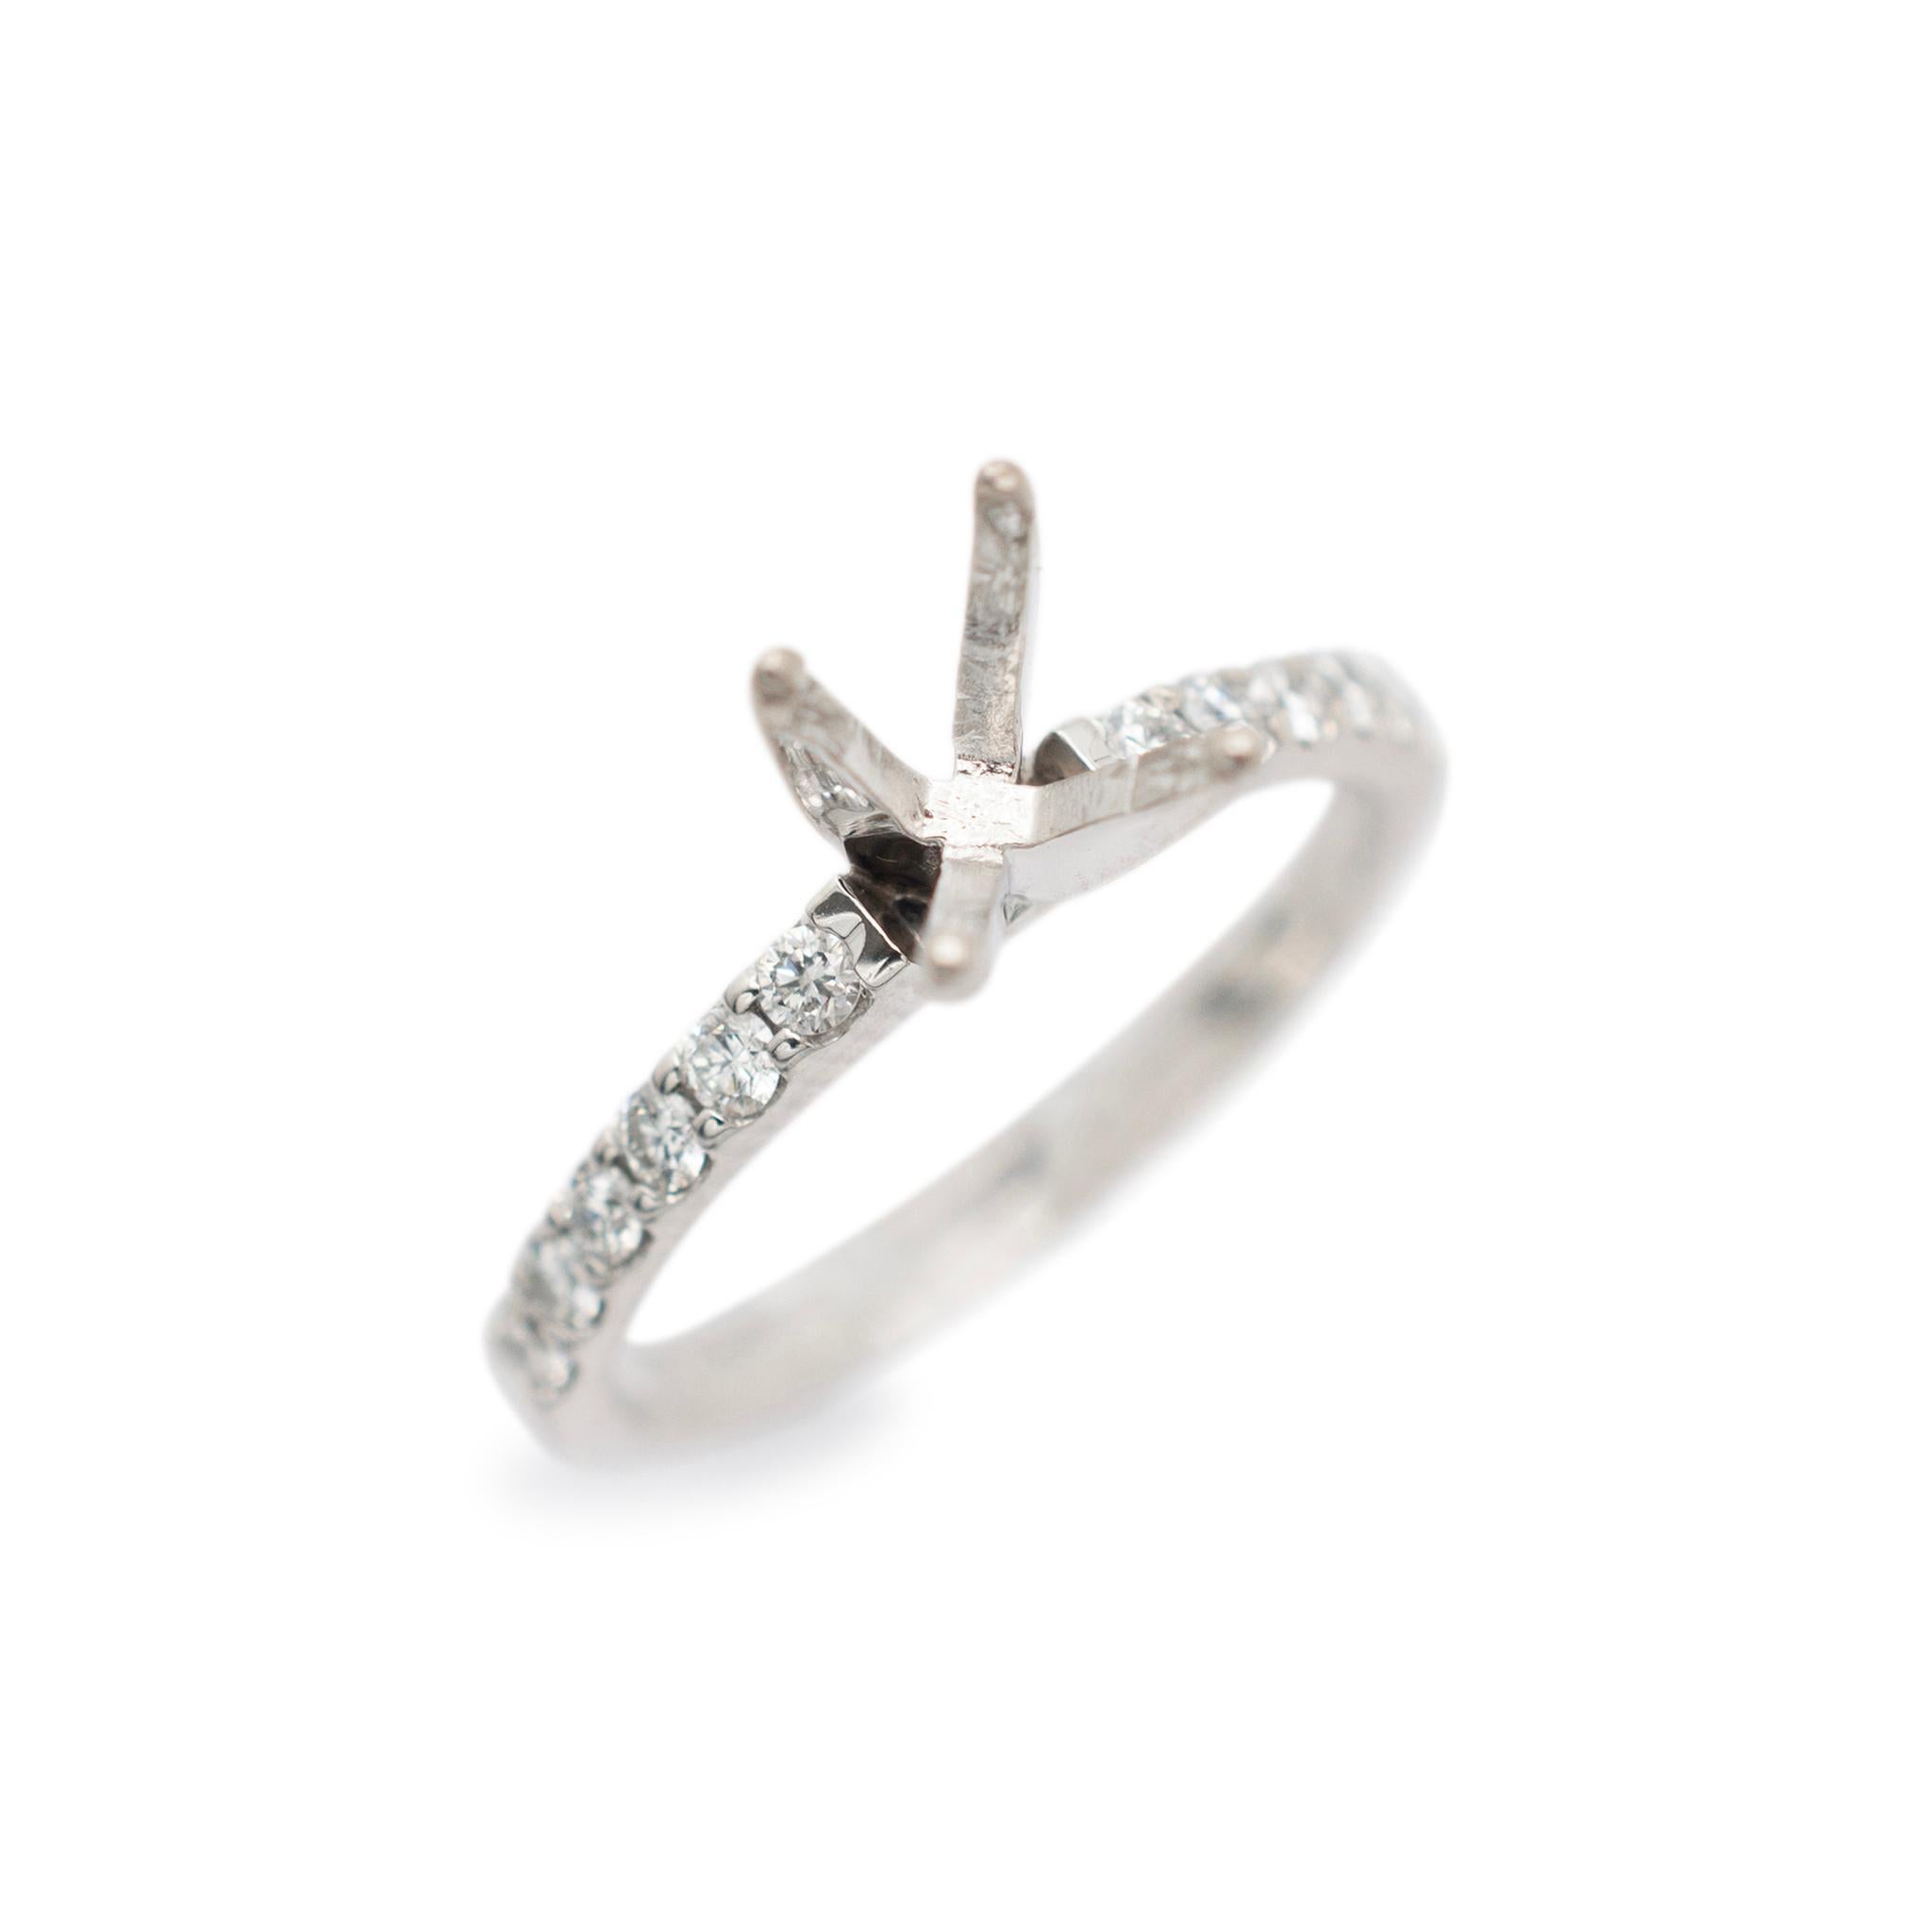 Sexo: Señoras 

Tipo de Metal: oro Blanco 18K

Tamaño del anillo: 5.5

Anchura máxima del vástago: 2.00 mm

La semimontura puede alojar una piedra redonda que mida entre 6,20 mm y 6,70 mm.

Peso: 2.82 gramos

Anillo de compromiso de diamantes en oro